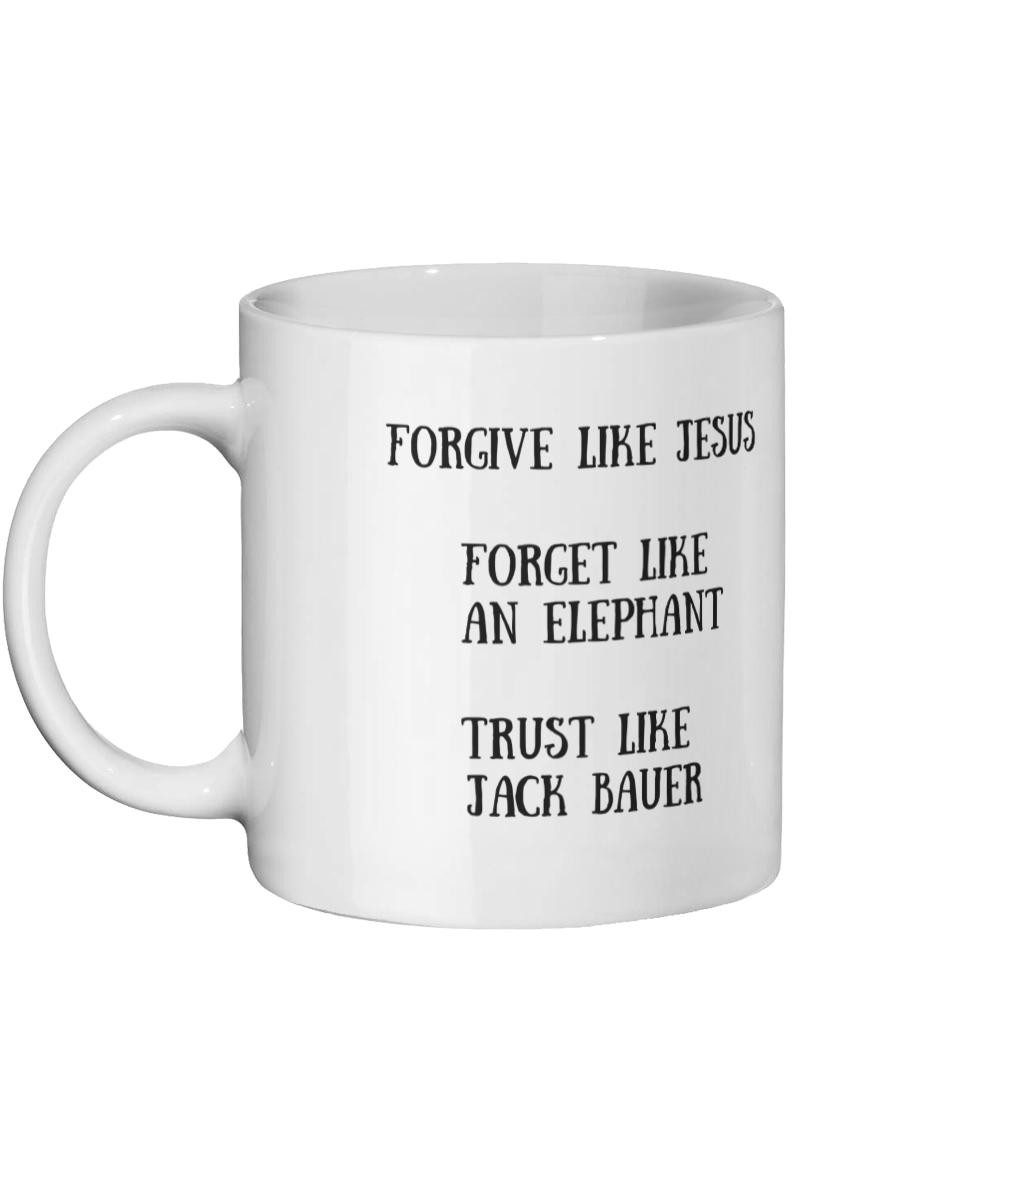 Forgive Like Jesus Mug Left Side